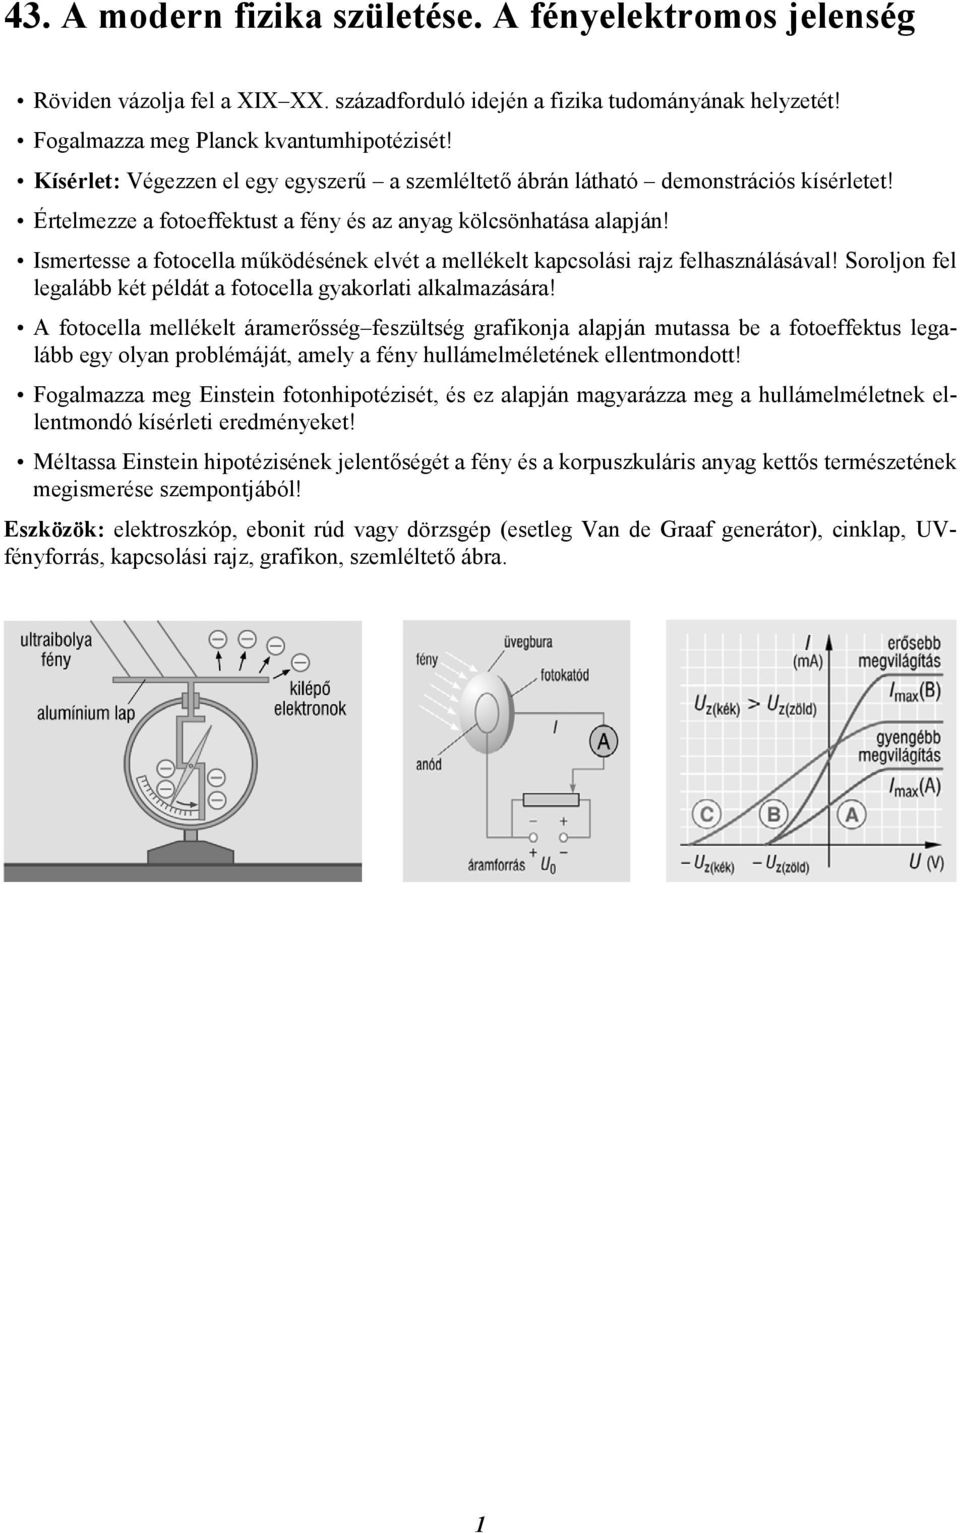 Ismertesse a fotocella működésének elvét a mellékelt kapcsolási rajz felhasználásával! Soroljon fel legalább két példát a fotocella gyakorlati alkalmazására!